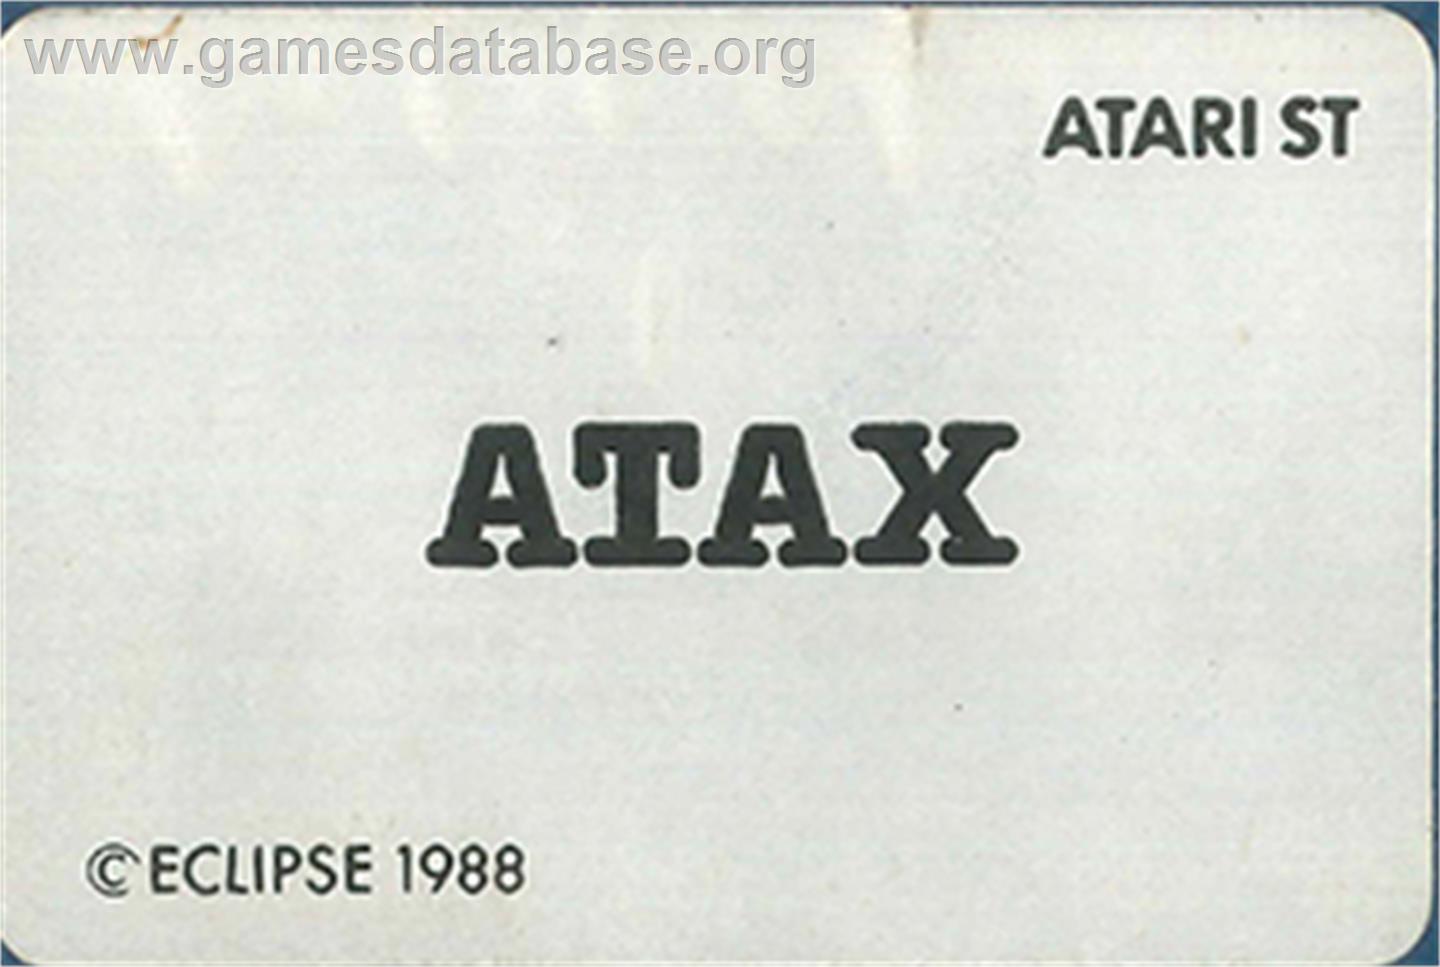 Plax Atax - Atari ST - Artwork - Cartridge Top